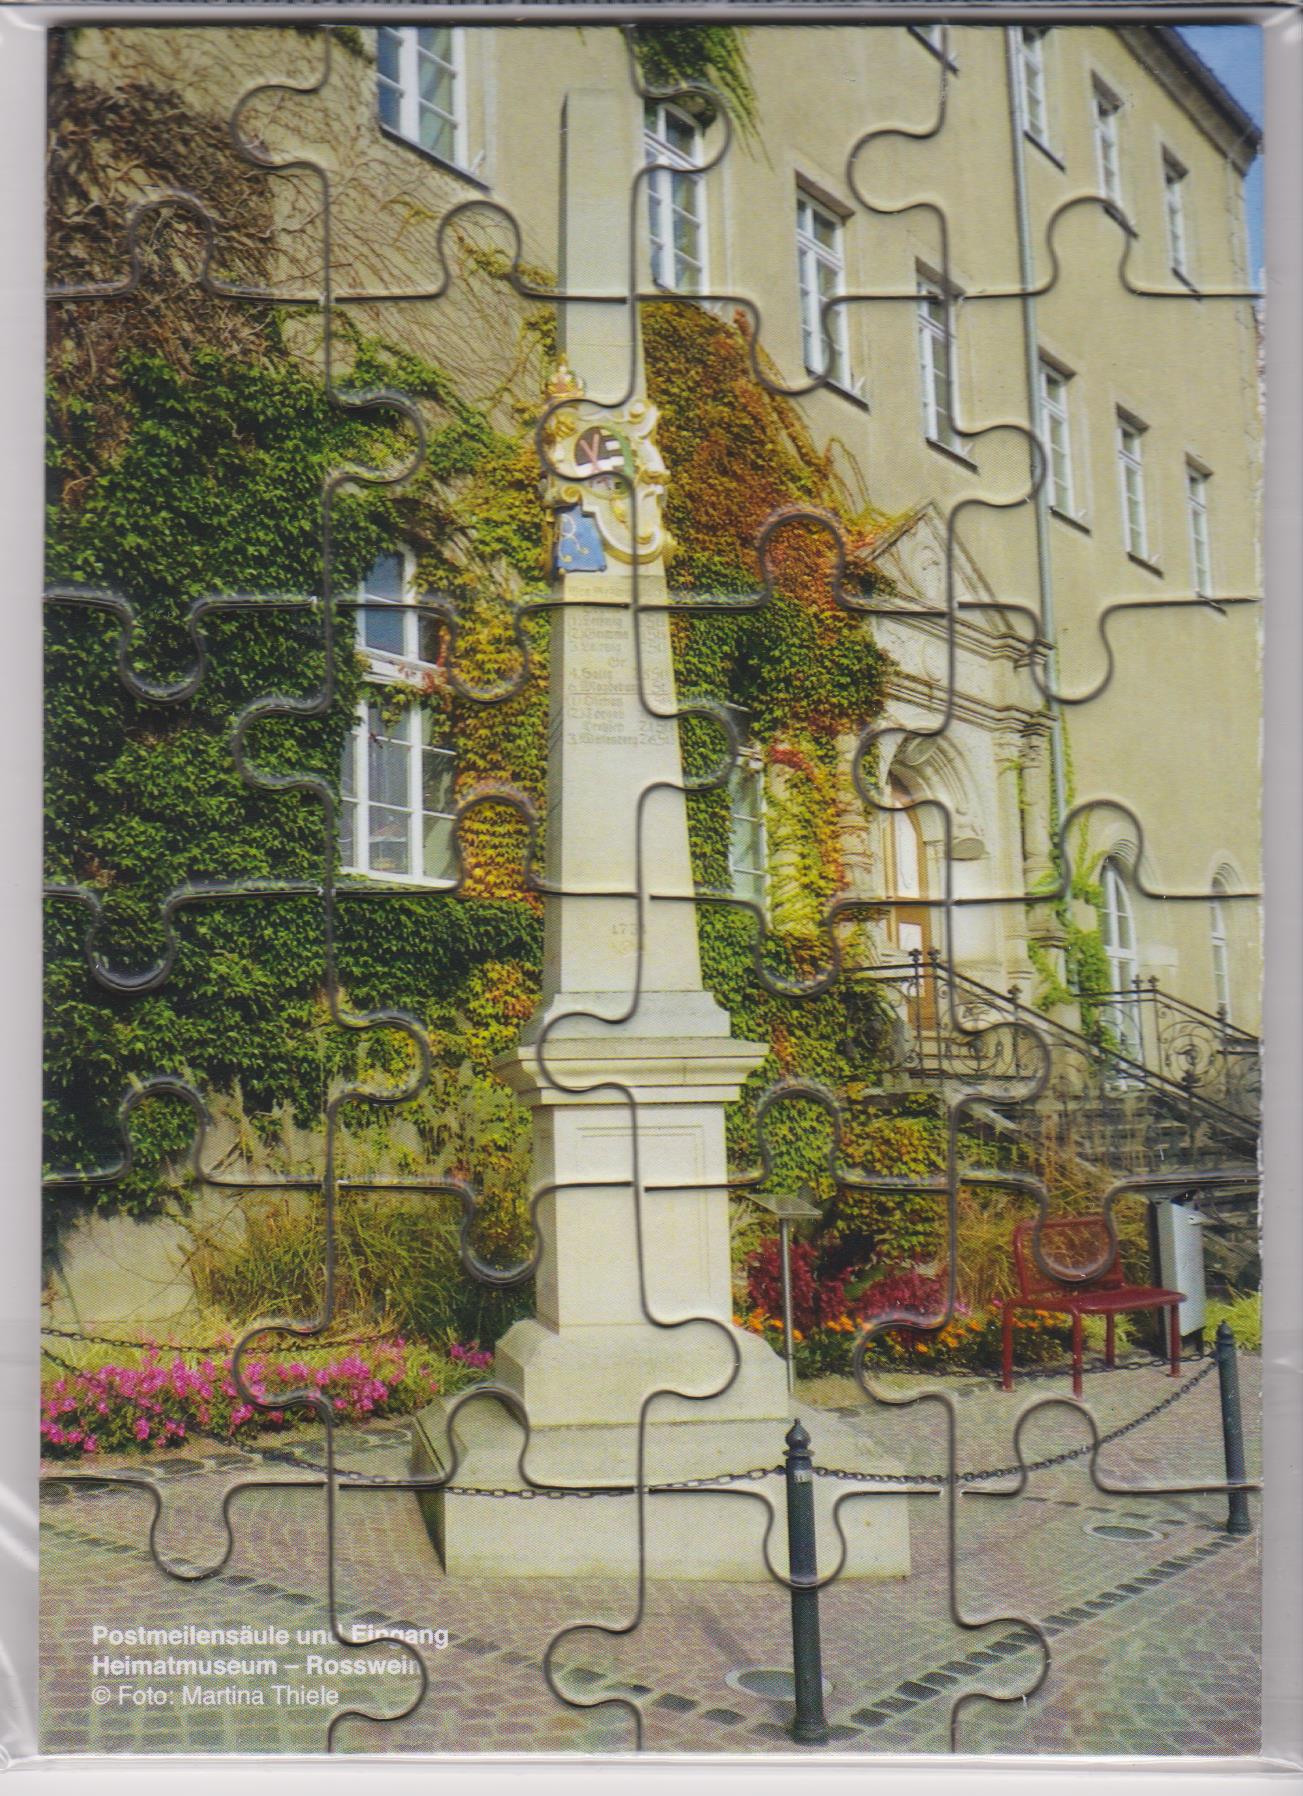 Mini-Puzzle: Postmeilensäule Roßwein